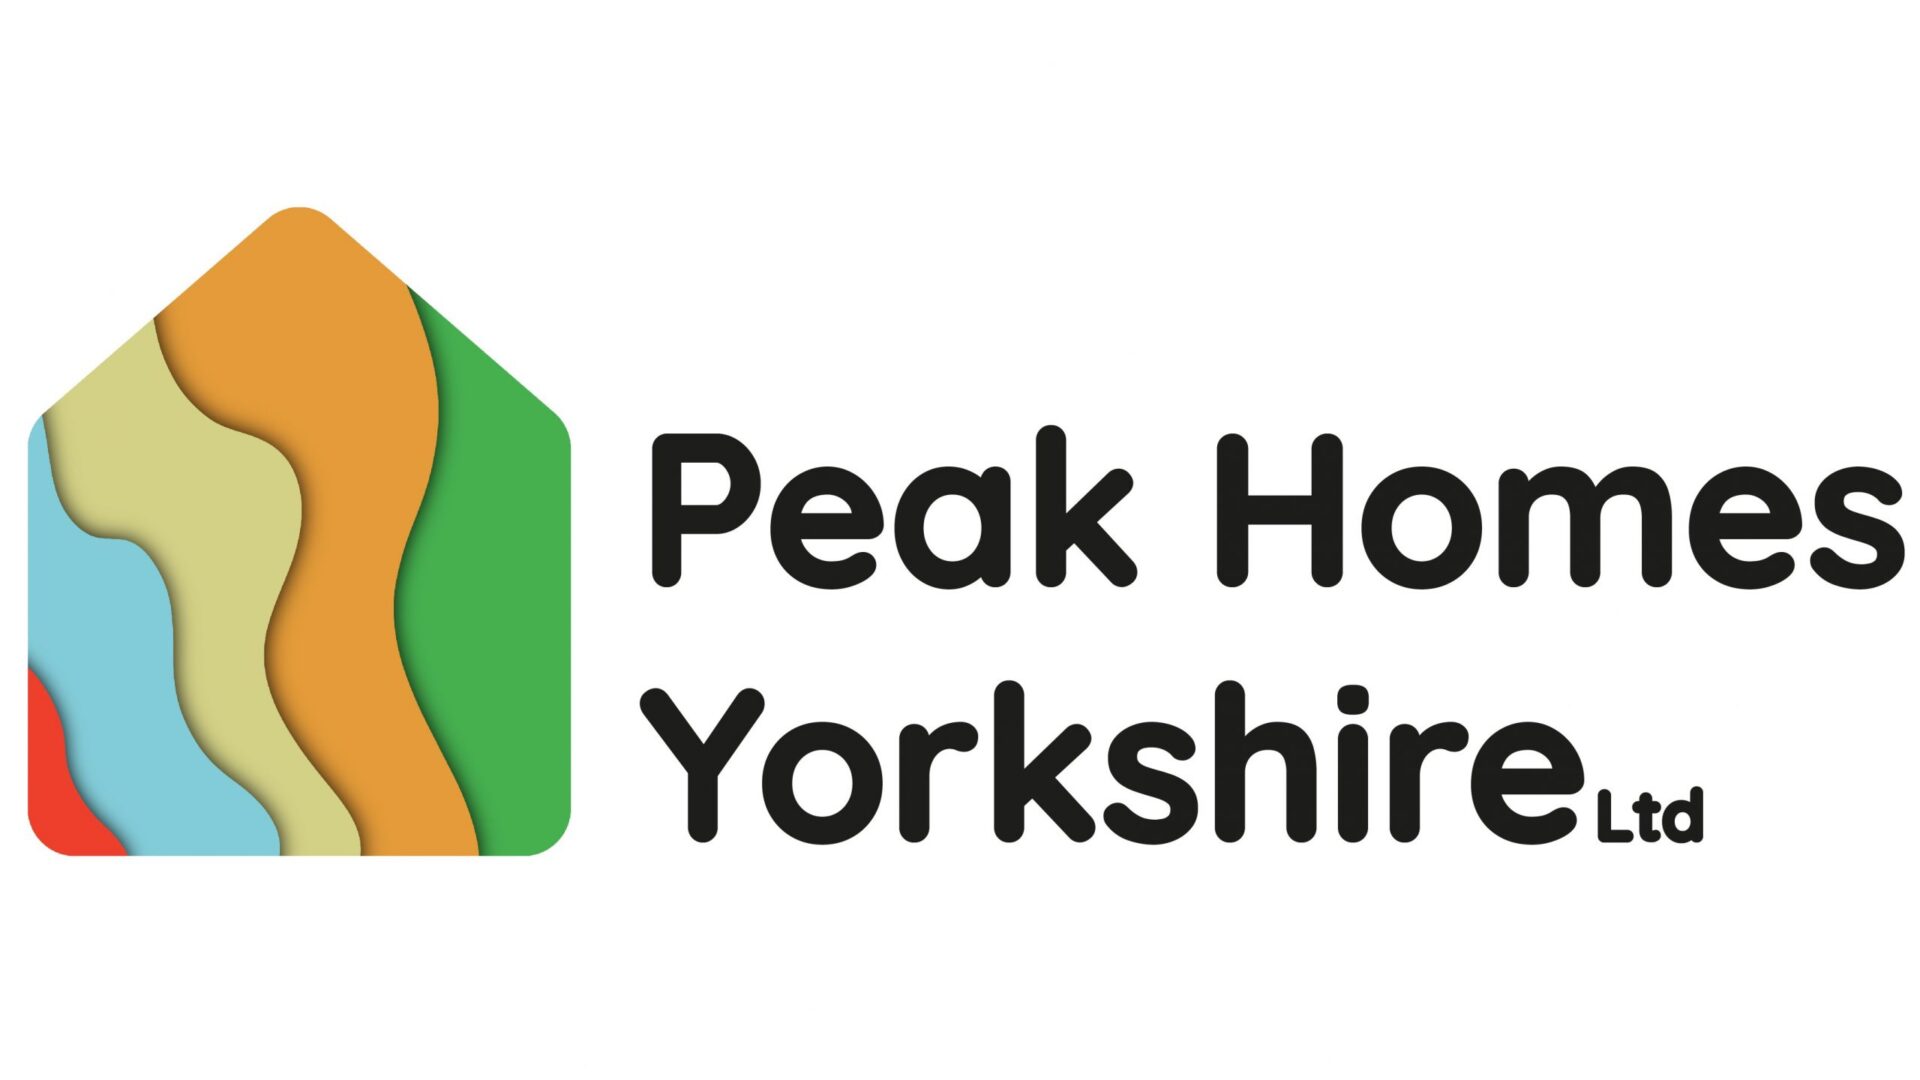 Peak Homes Yorkshire Ltd